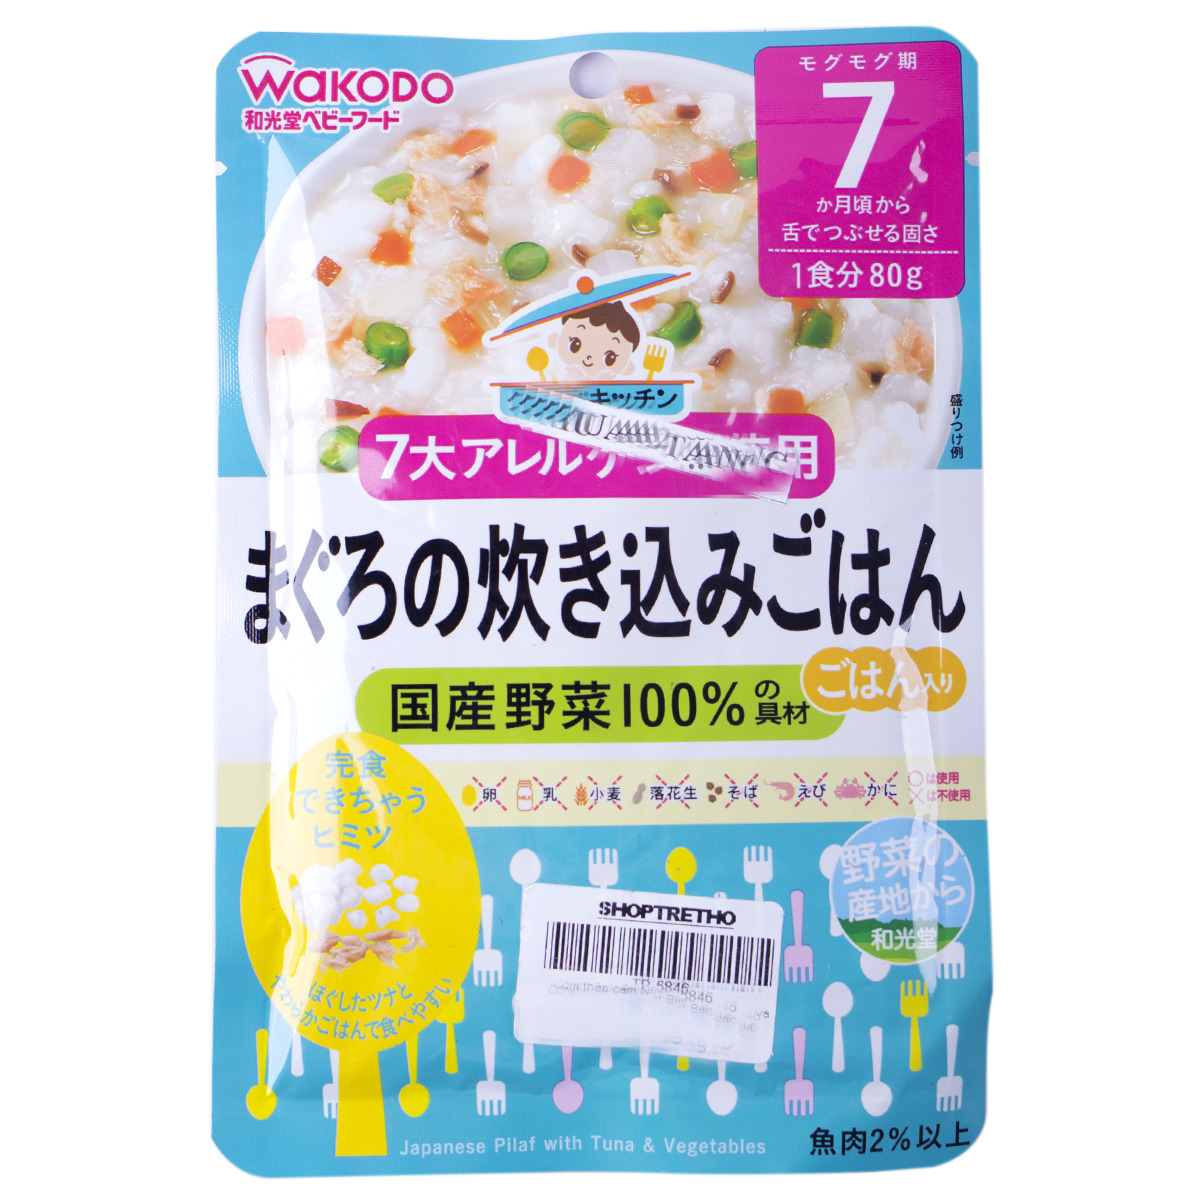 Cơm thập cẩm Nhật Bản cá ngừ và rau Wakodo (7 tháng)